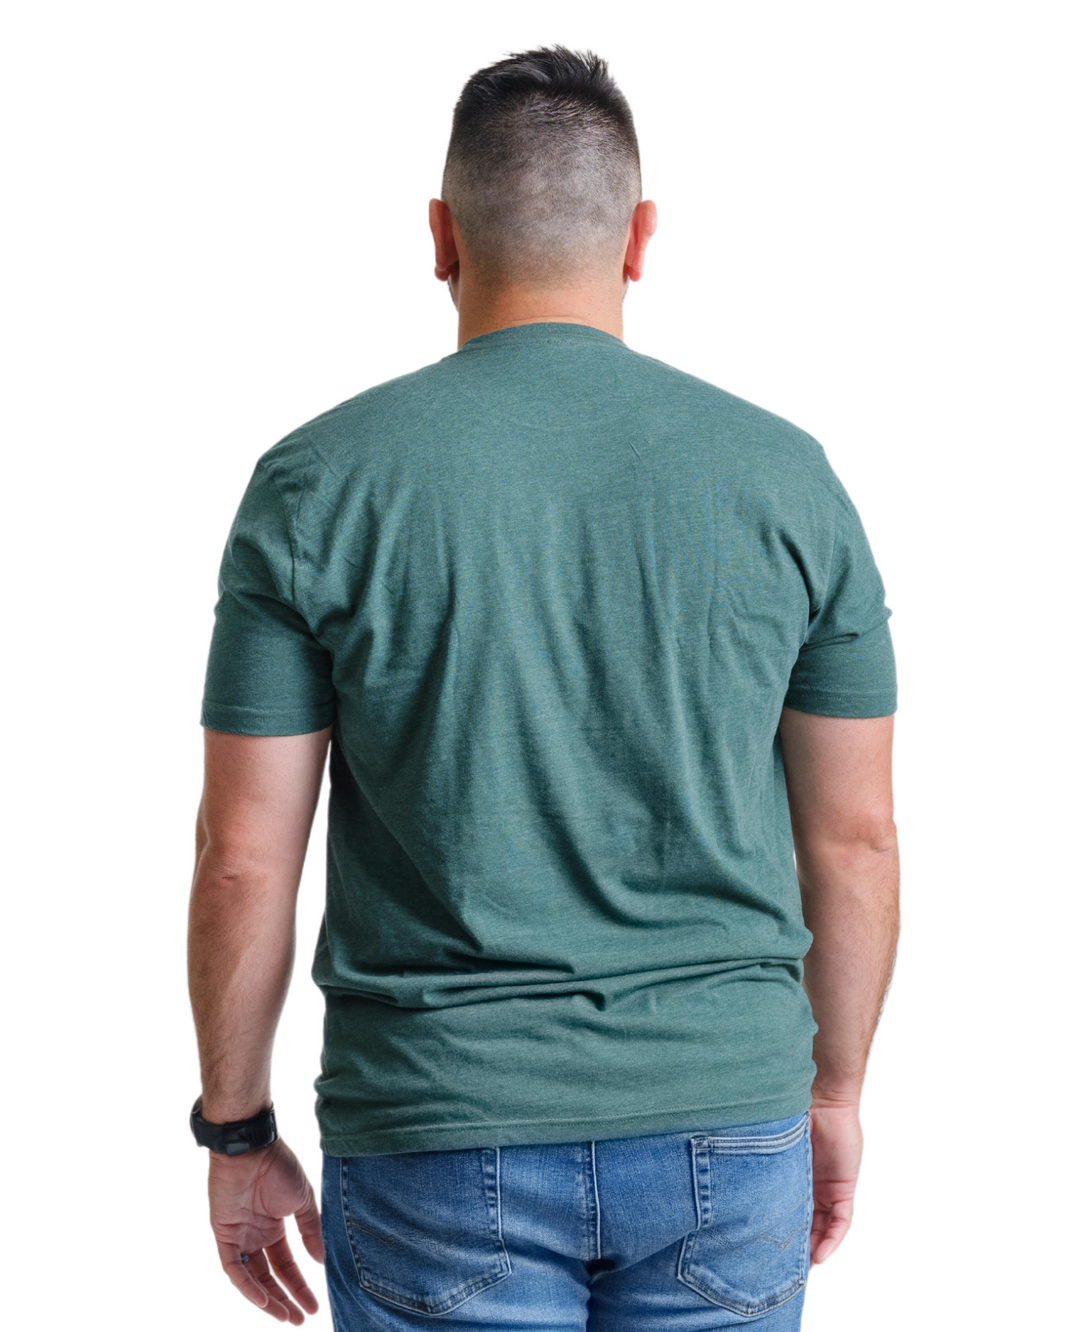 Wayne State University Block W Logo on Green Premium T-Shirt